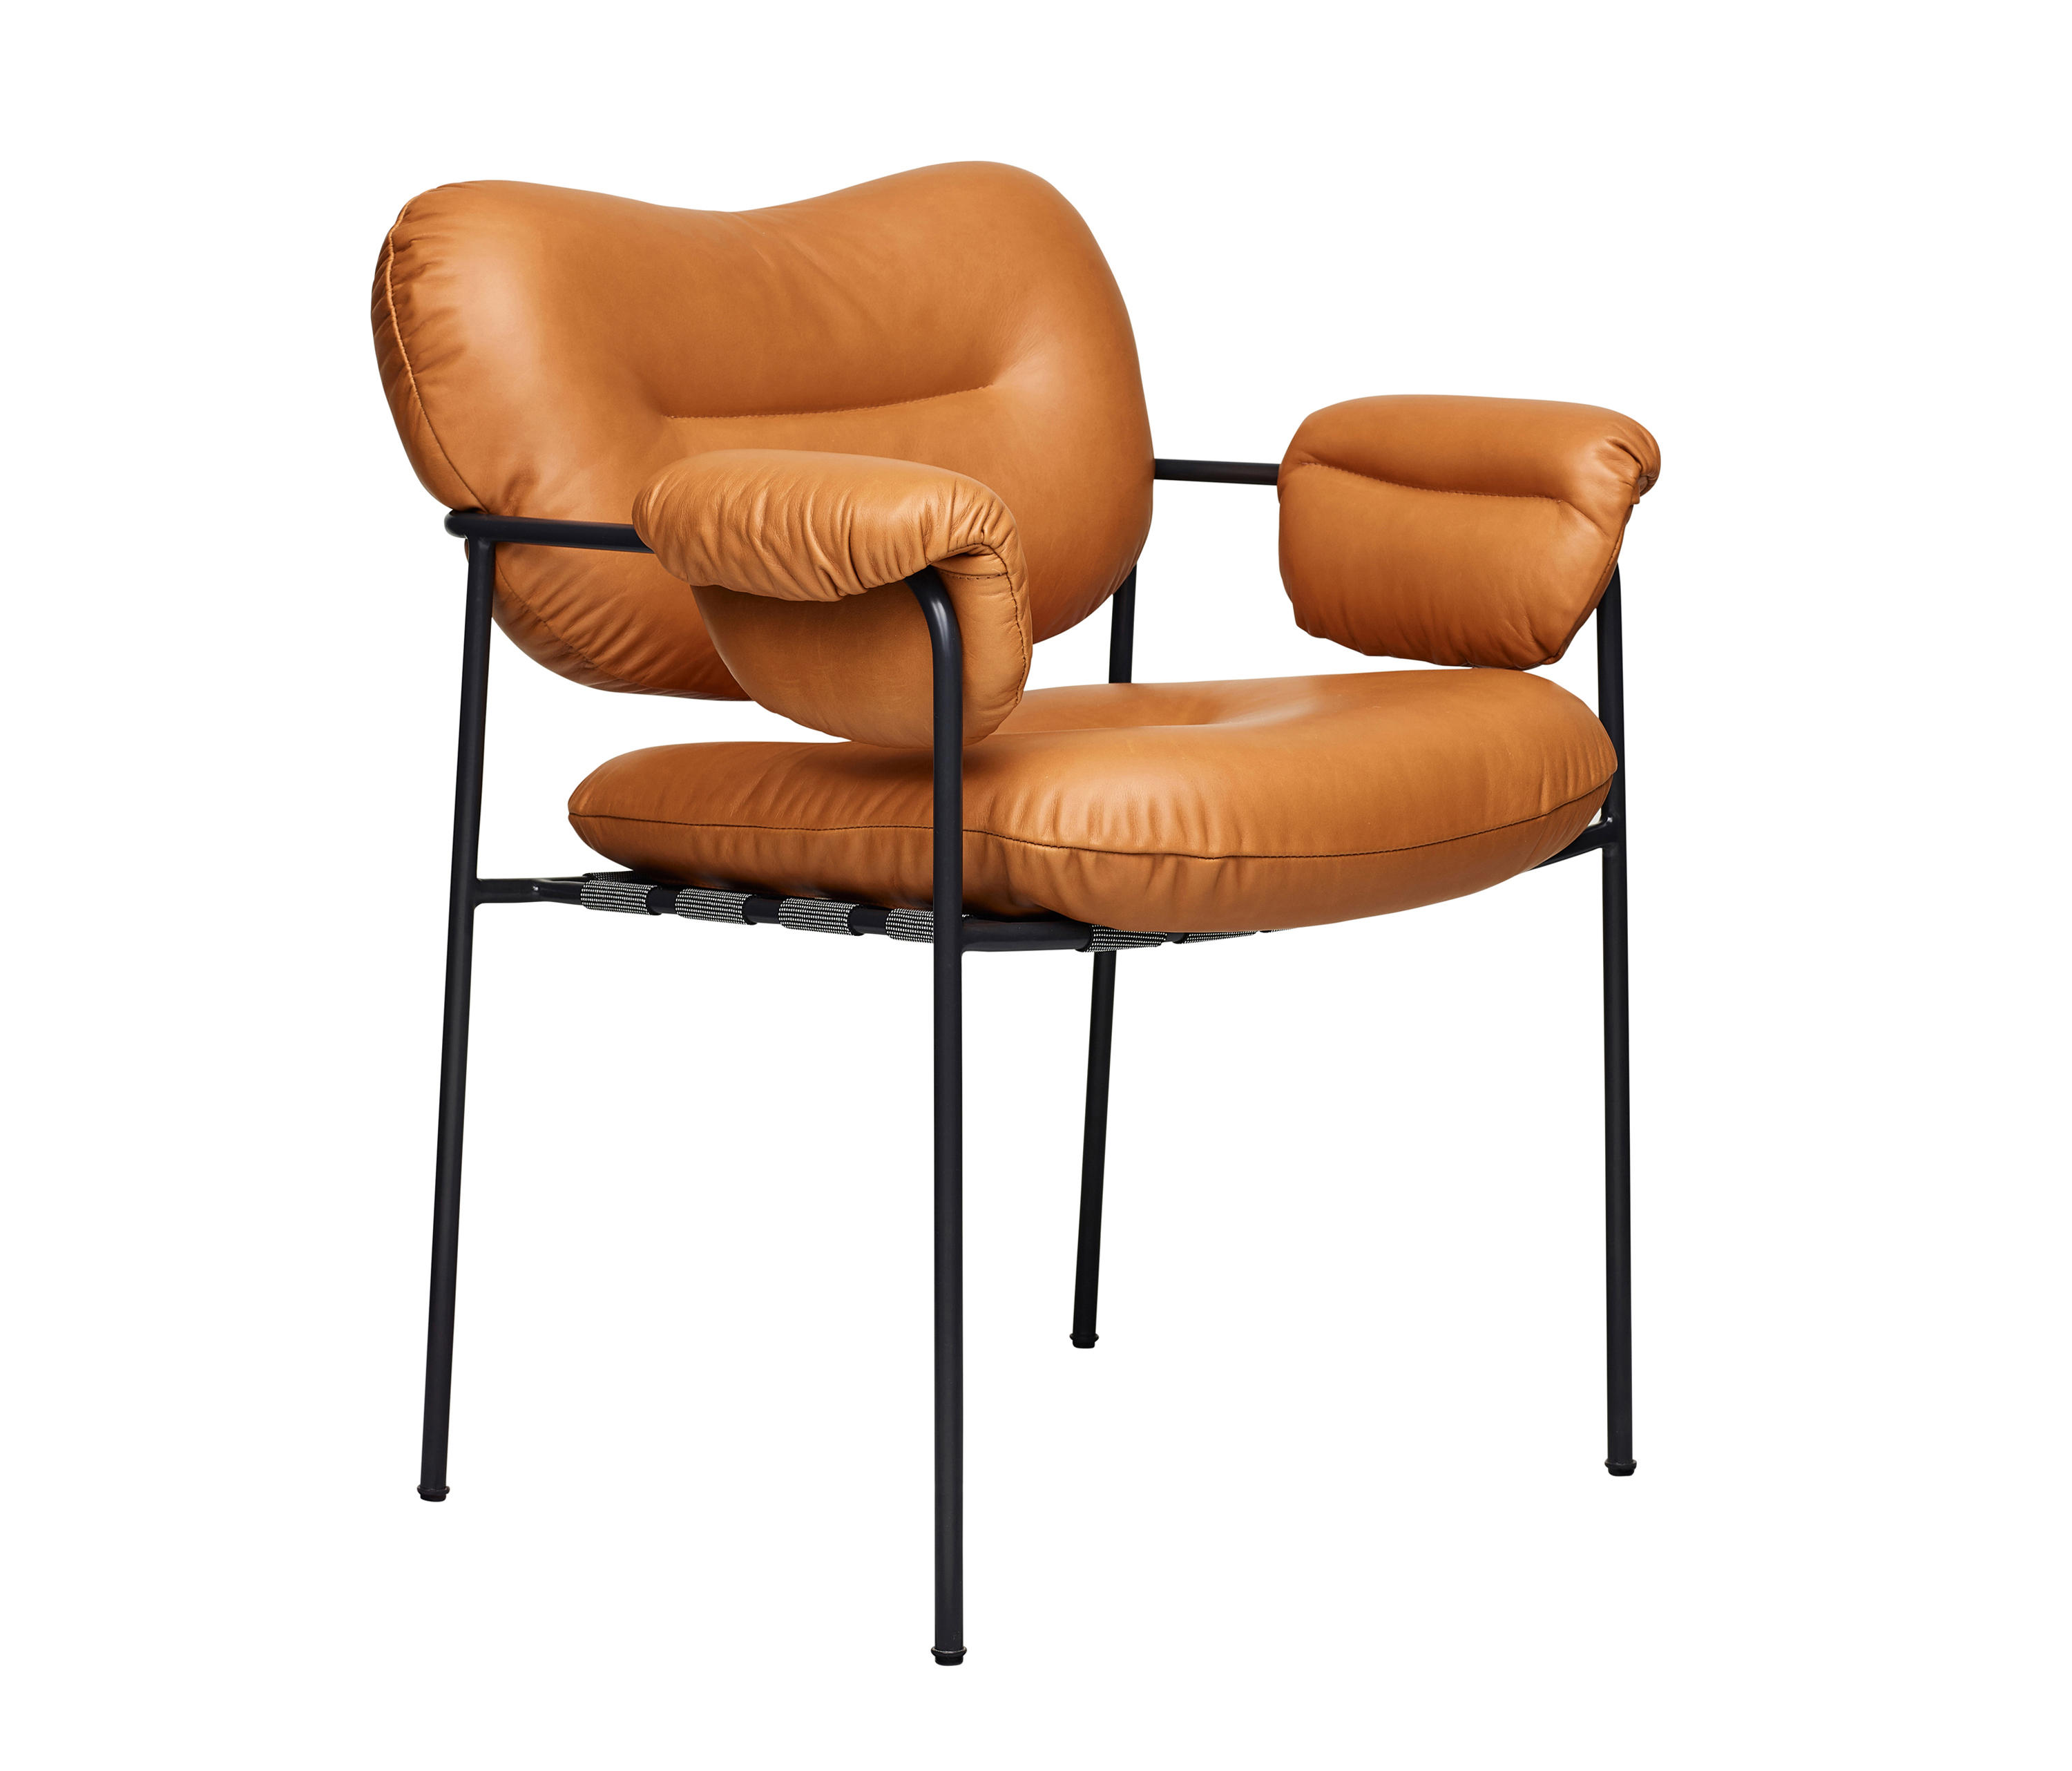 Bollo Spisolini & designer furniture | Architonic